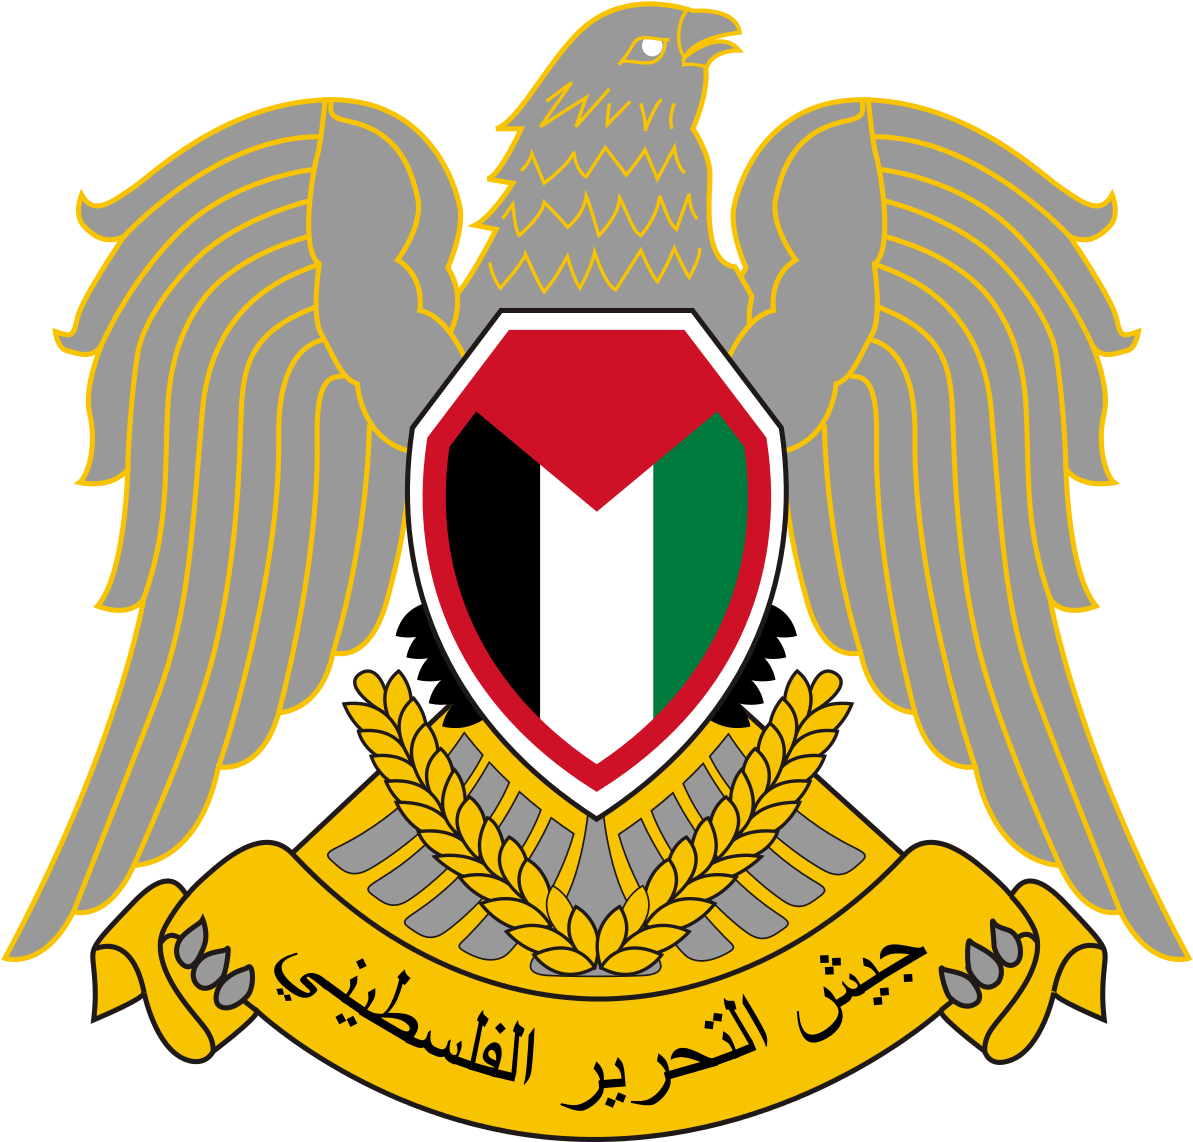 Palestine Liberation Army (1200x1152)